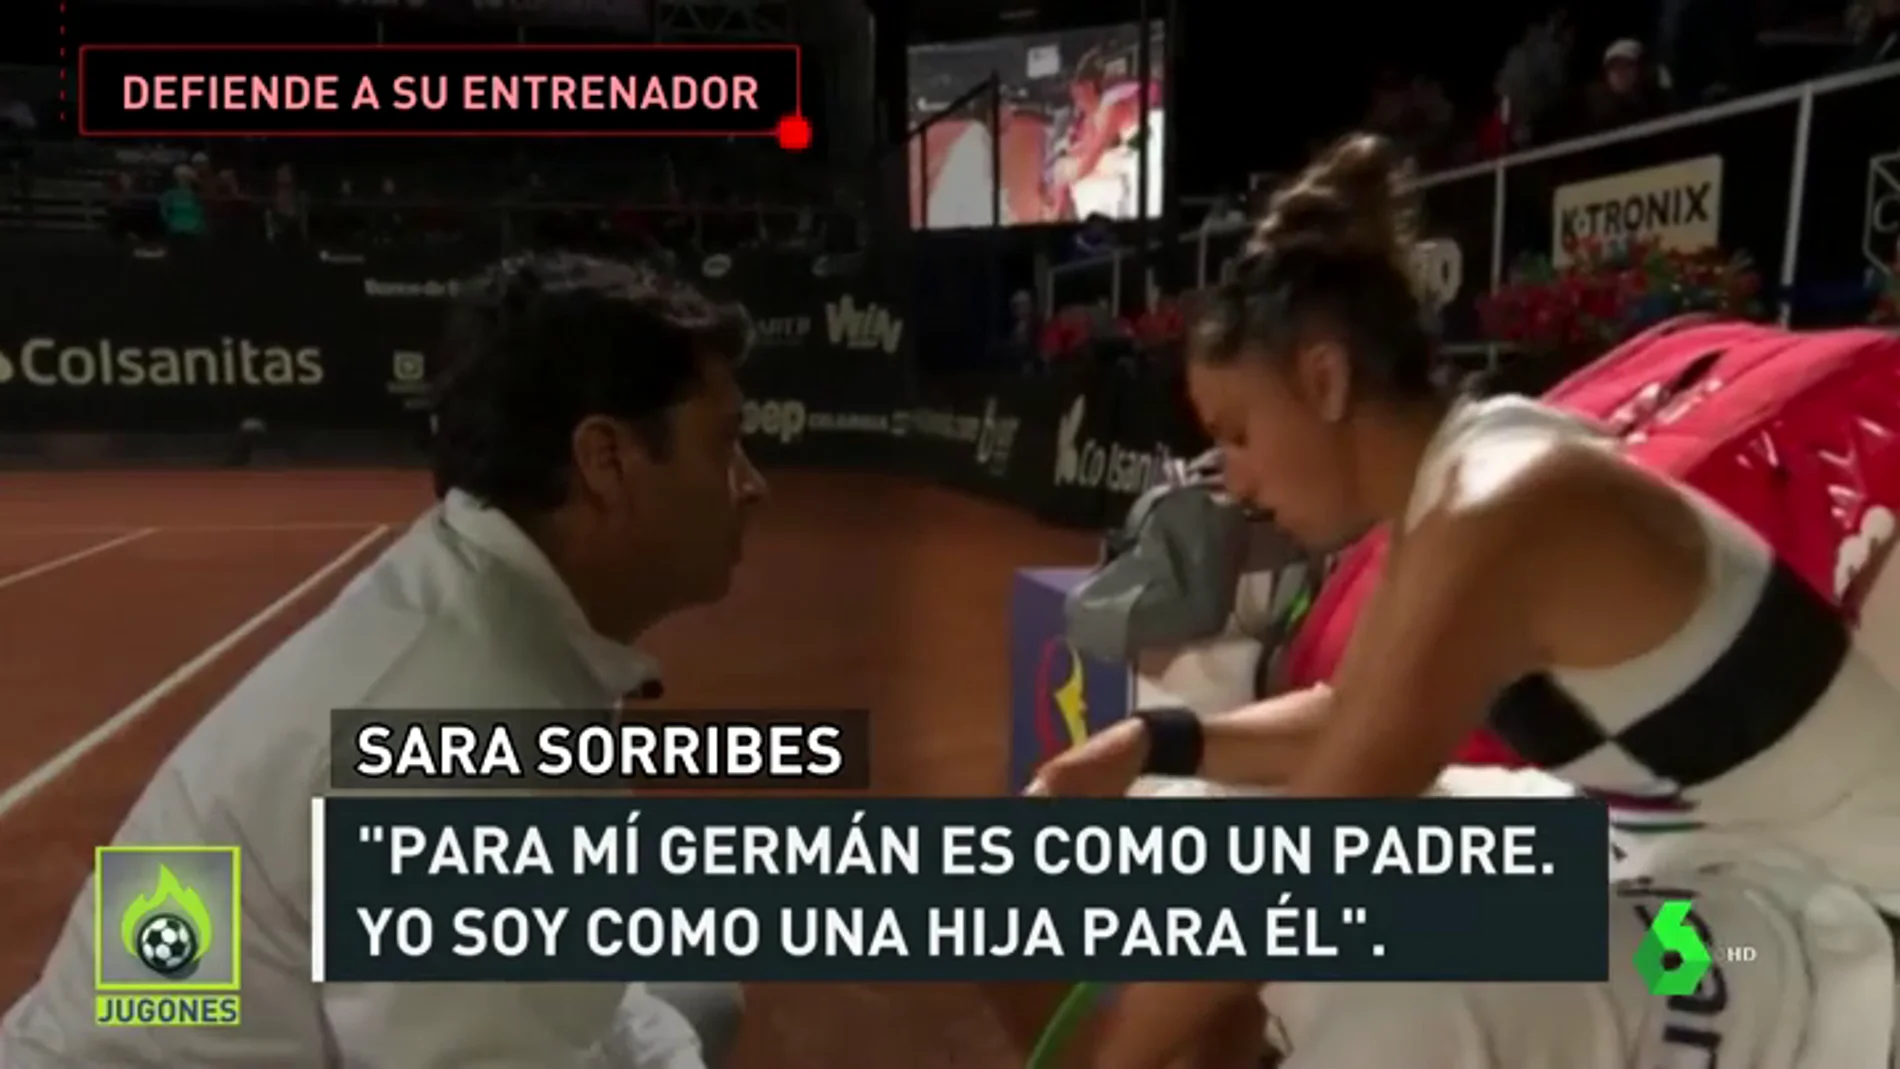 Sara Sorribes defiende a su entrenador: "Es como un padre para mí, me duele escuchar ciertas cosas"